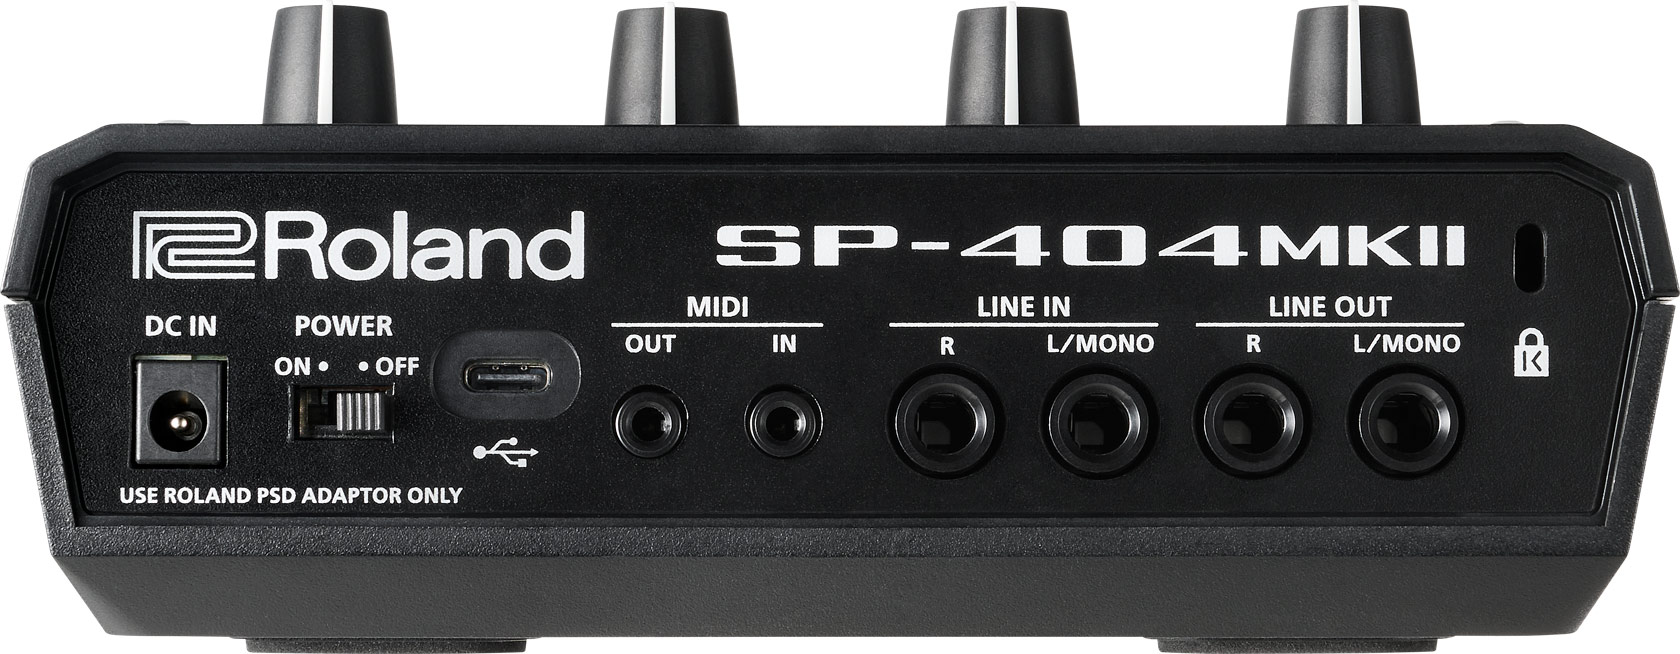 激安買う Roland サンプラー SP404mk2 MKII SP-404 DTM/DAW